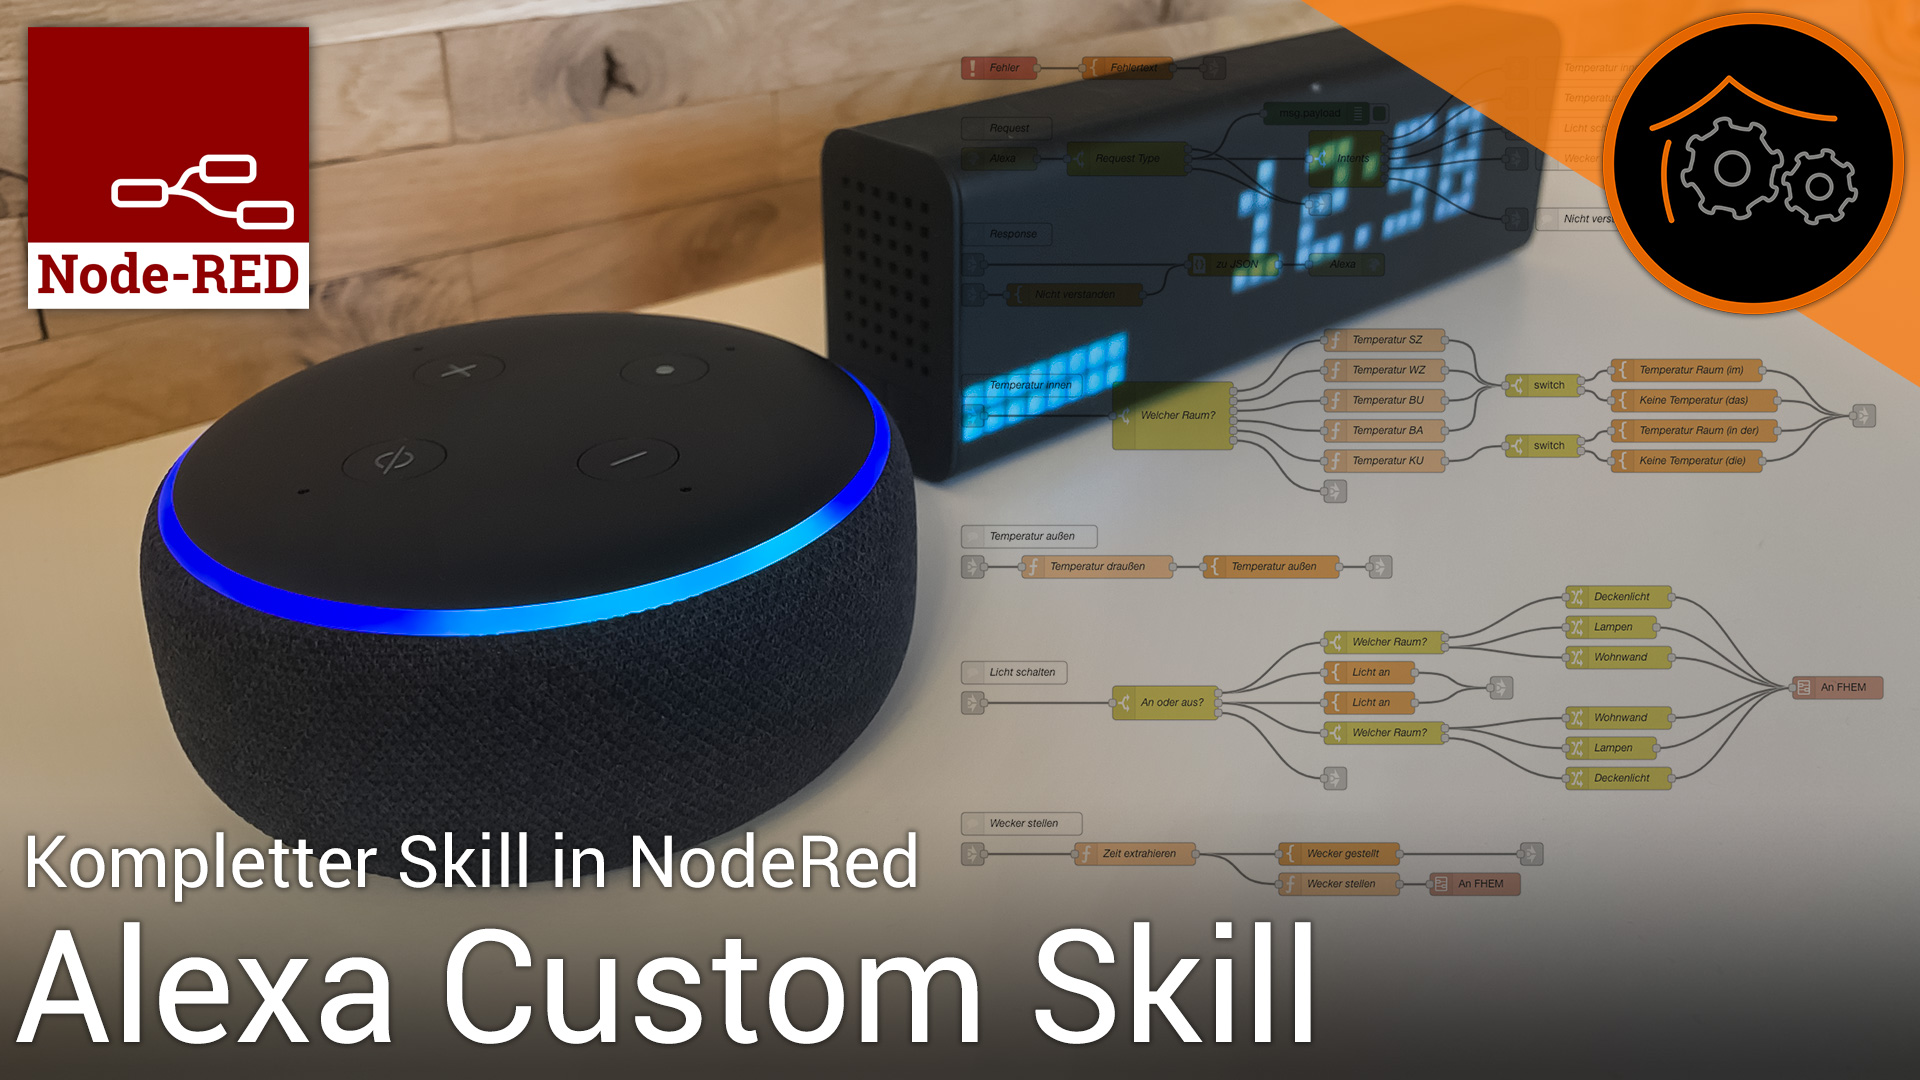 Projekt: Alexa Custom Skill mit Node-RED umsetzen